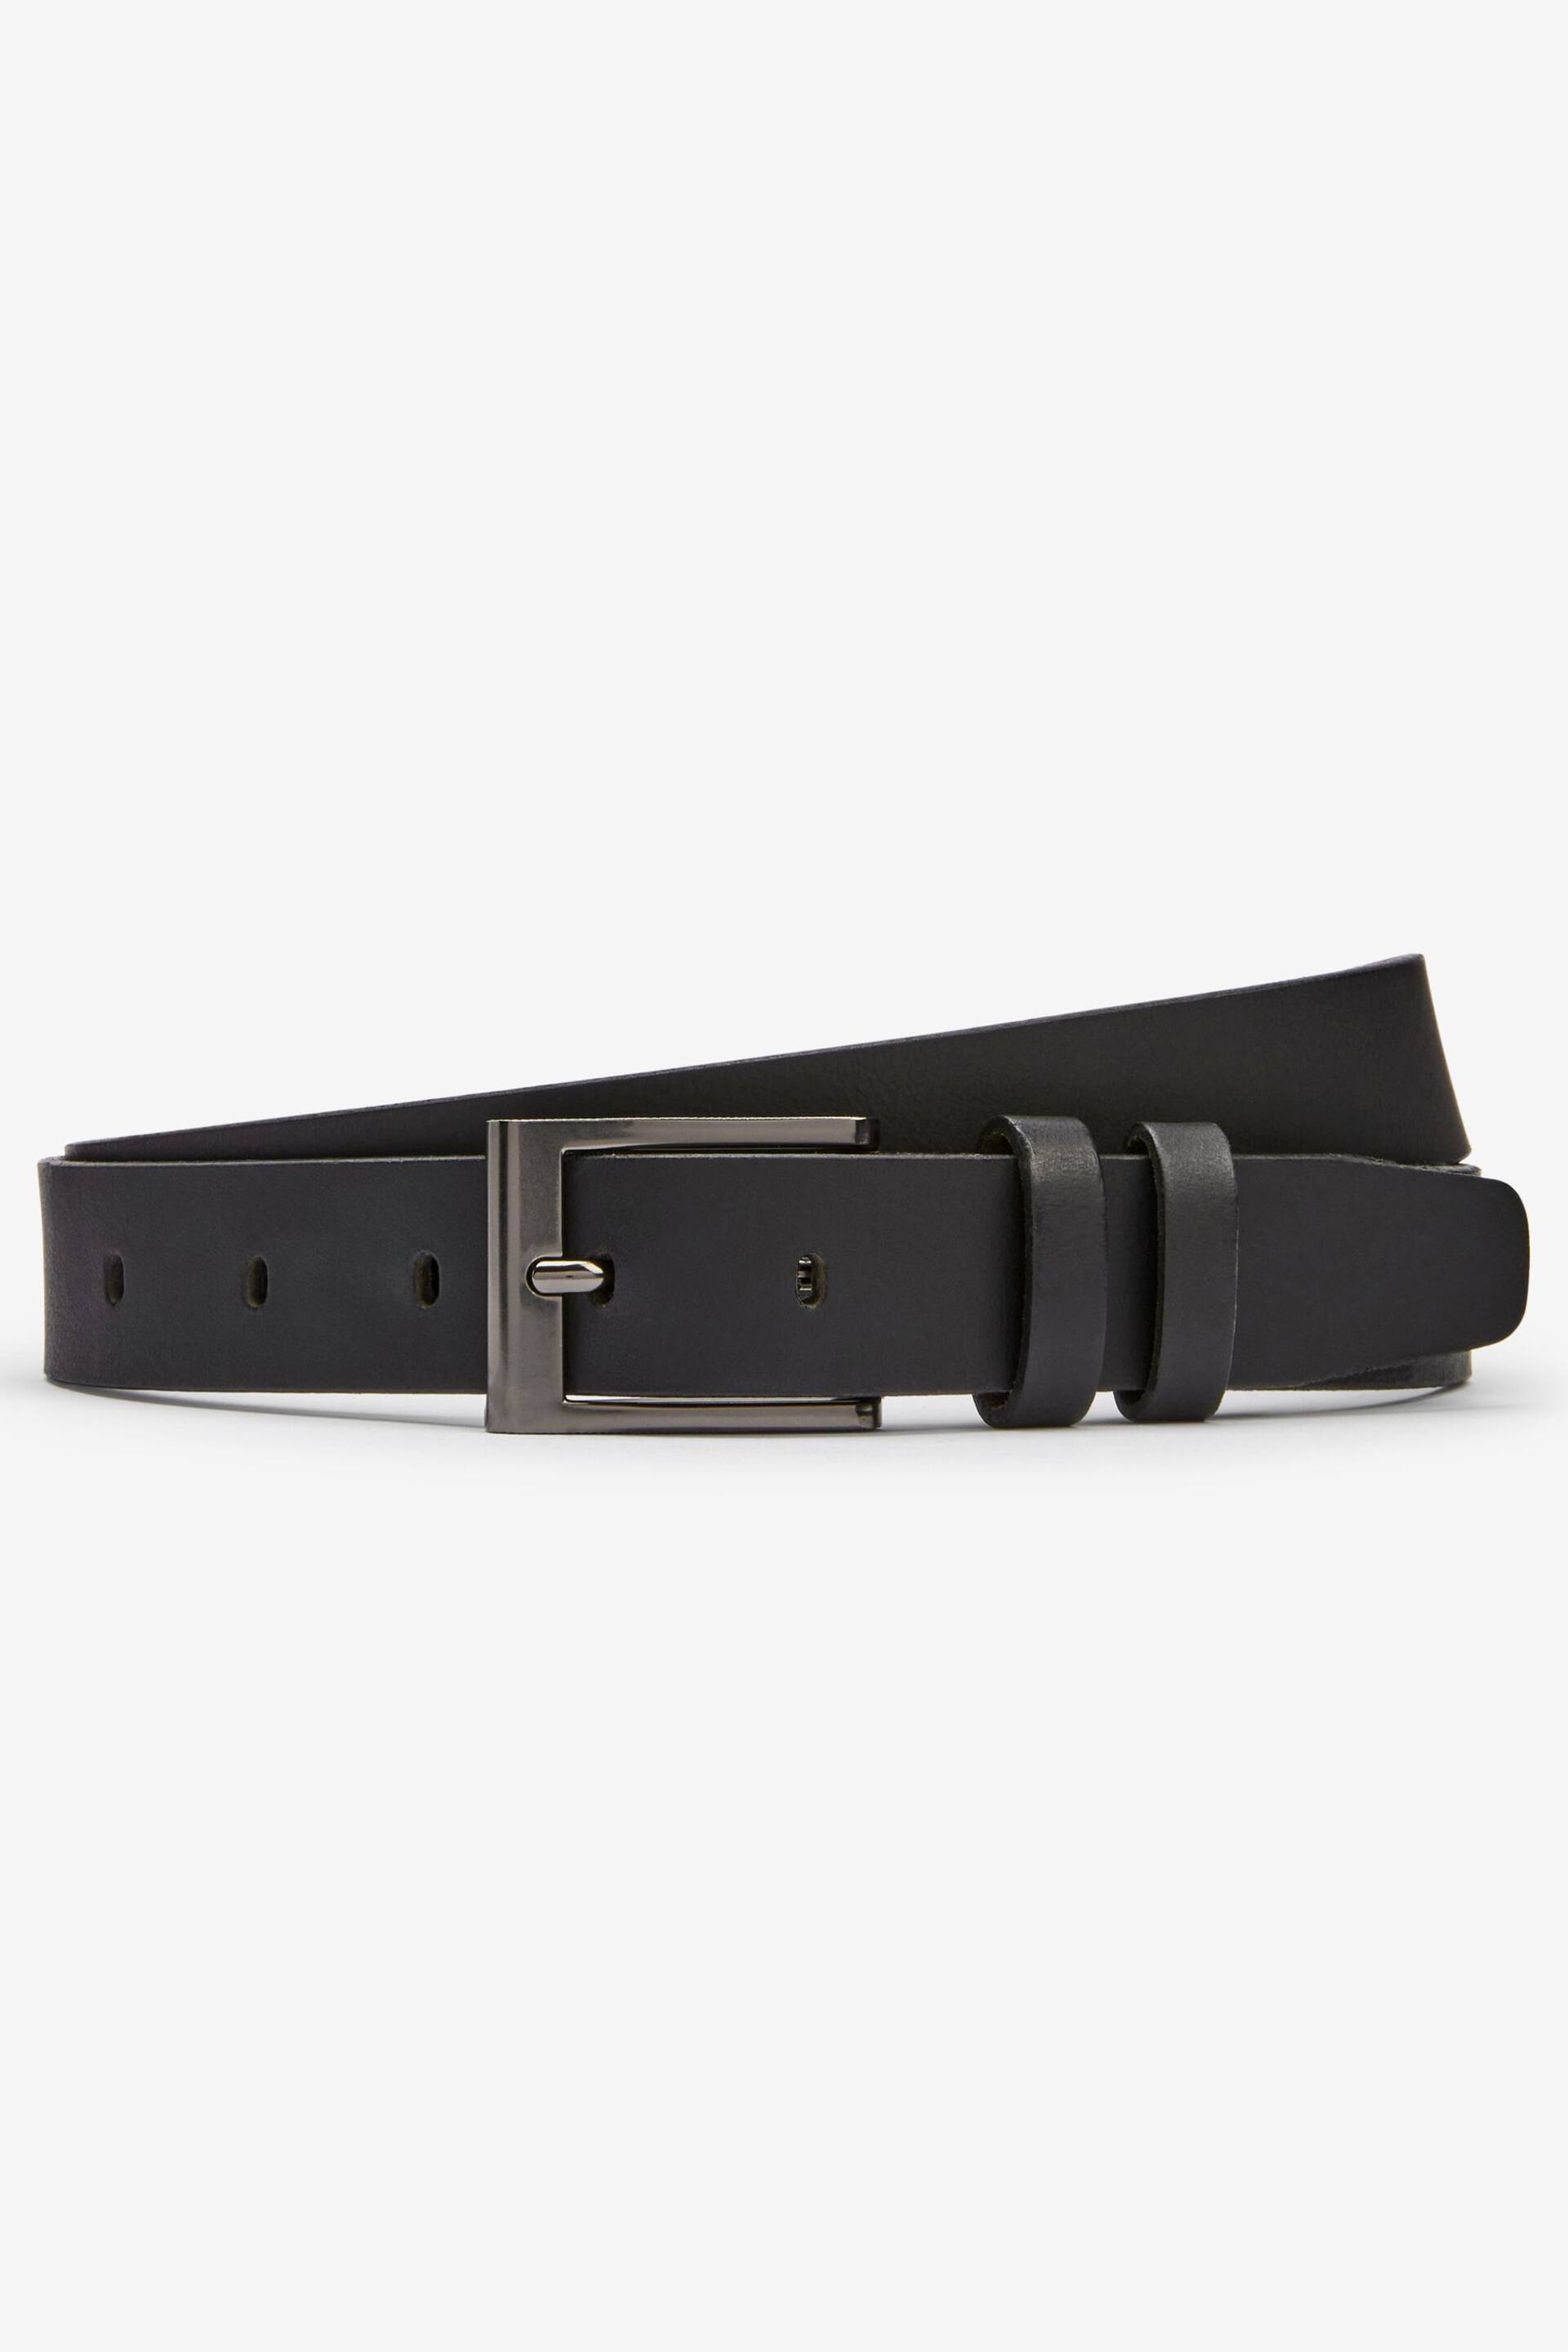 Black Leather Belt - Image 2 of 3